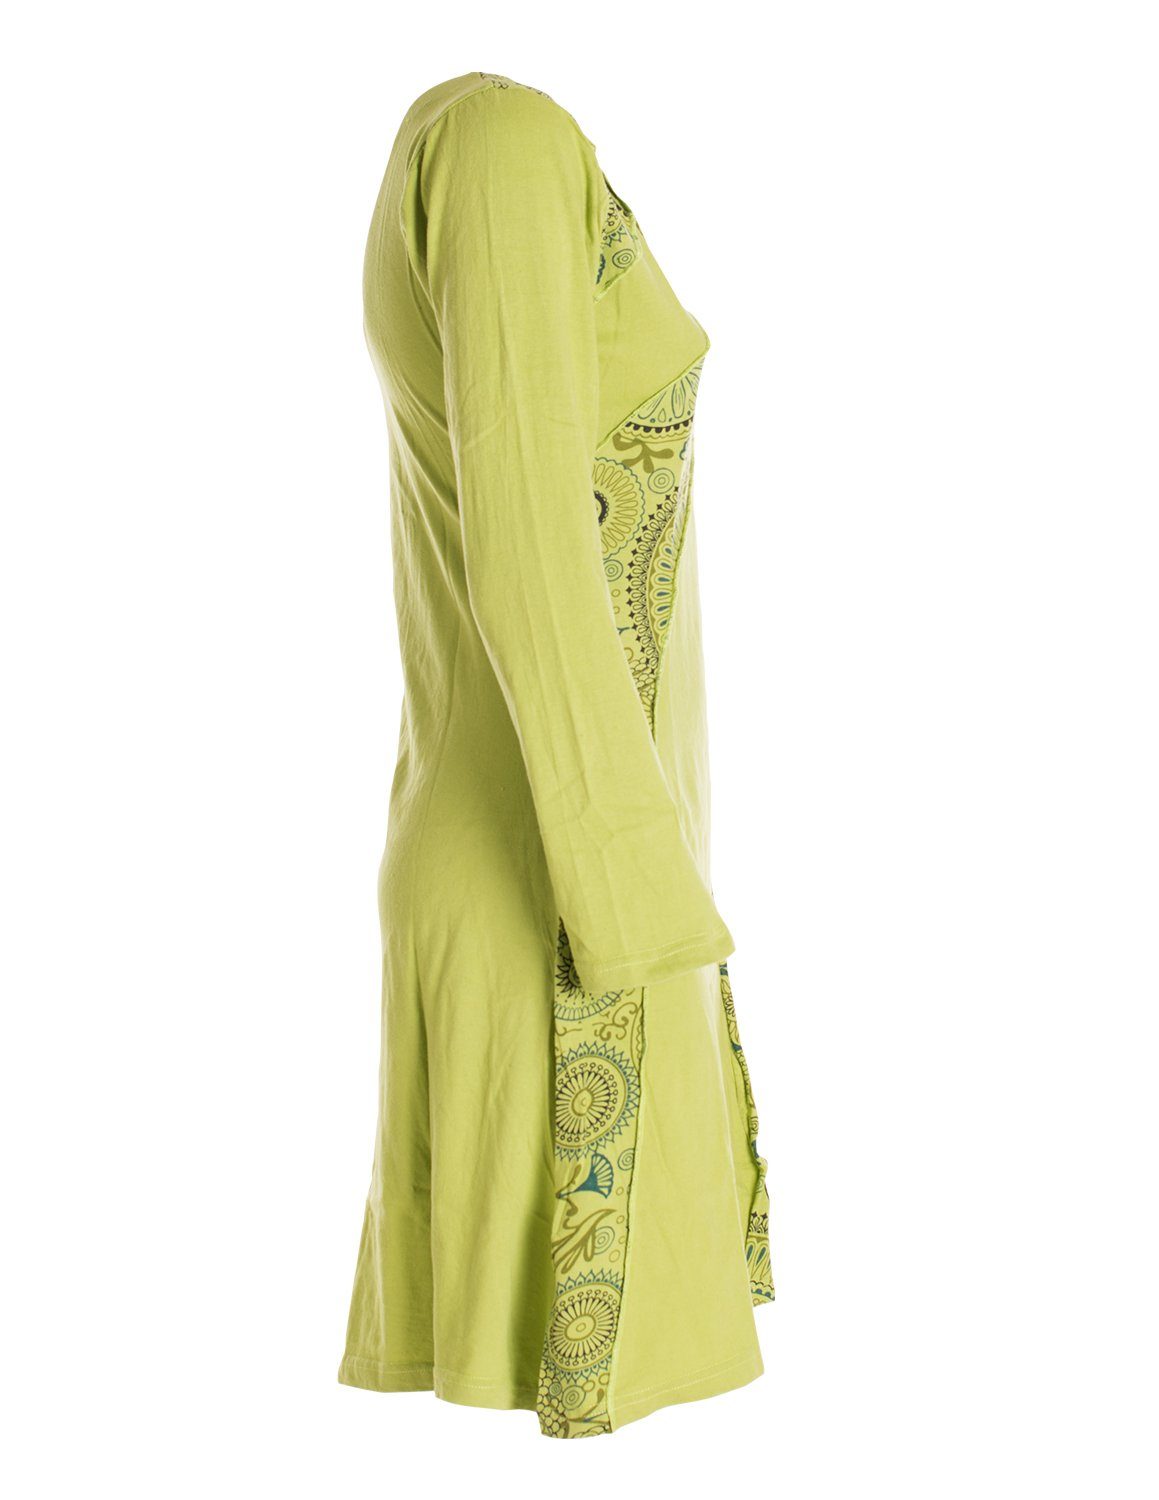 Langarm hellgrün Elfen Style Ethno, Damen Jerseykleid Blumenkleid Kleid Vishes Baumwollkleid Mandala Rundhals Hippie,